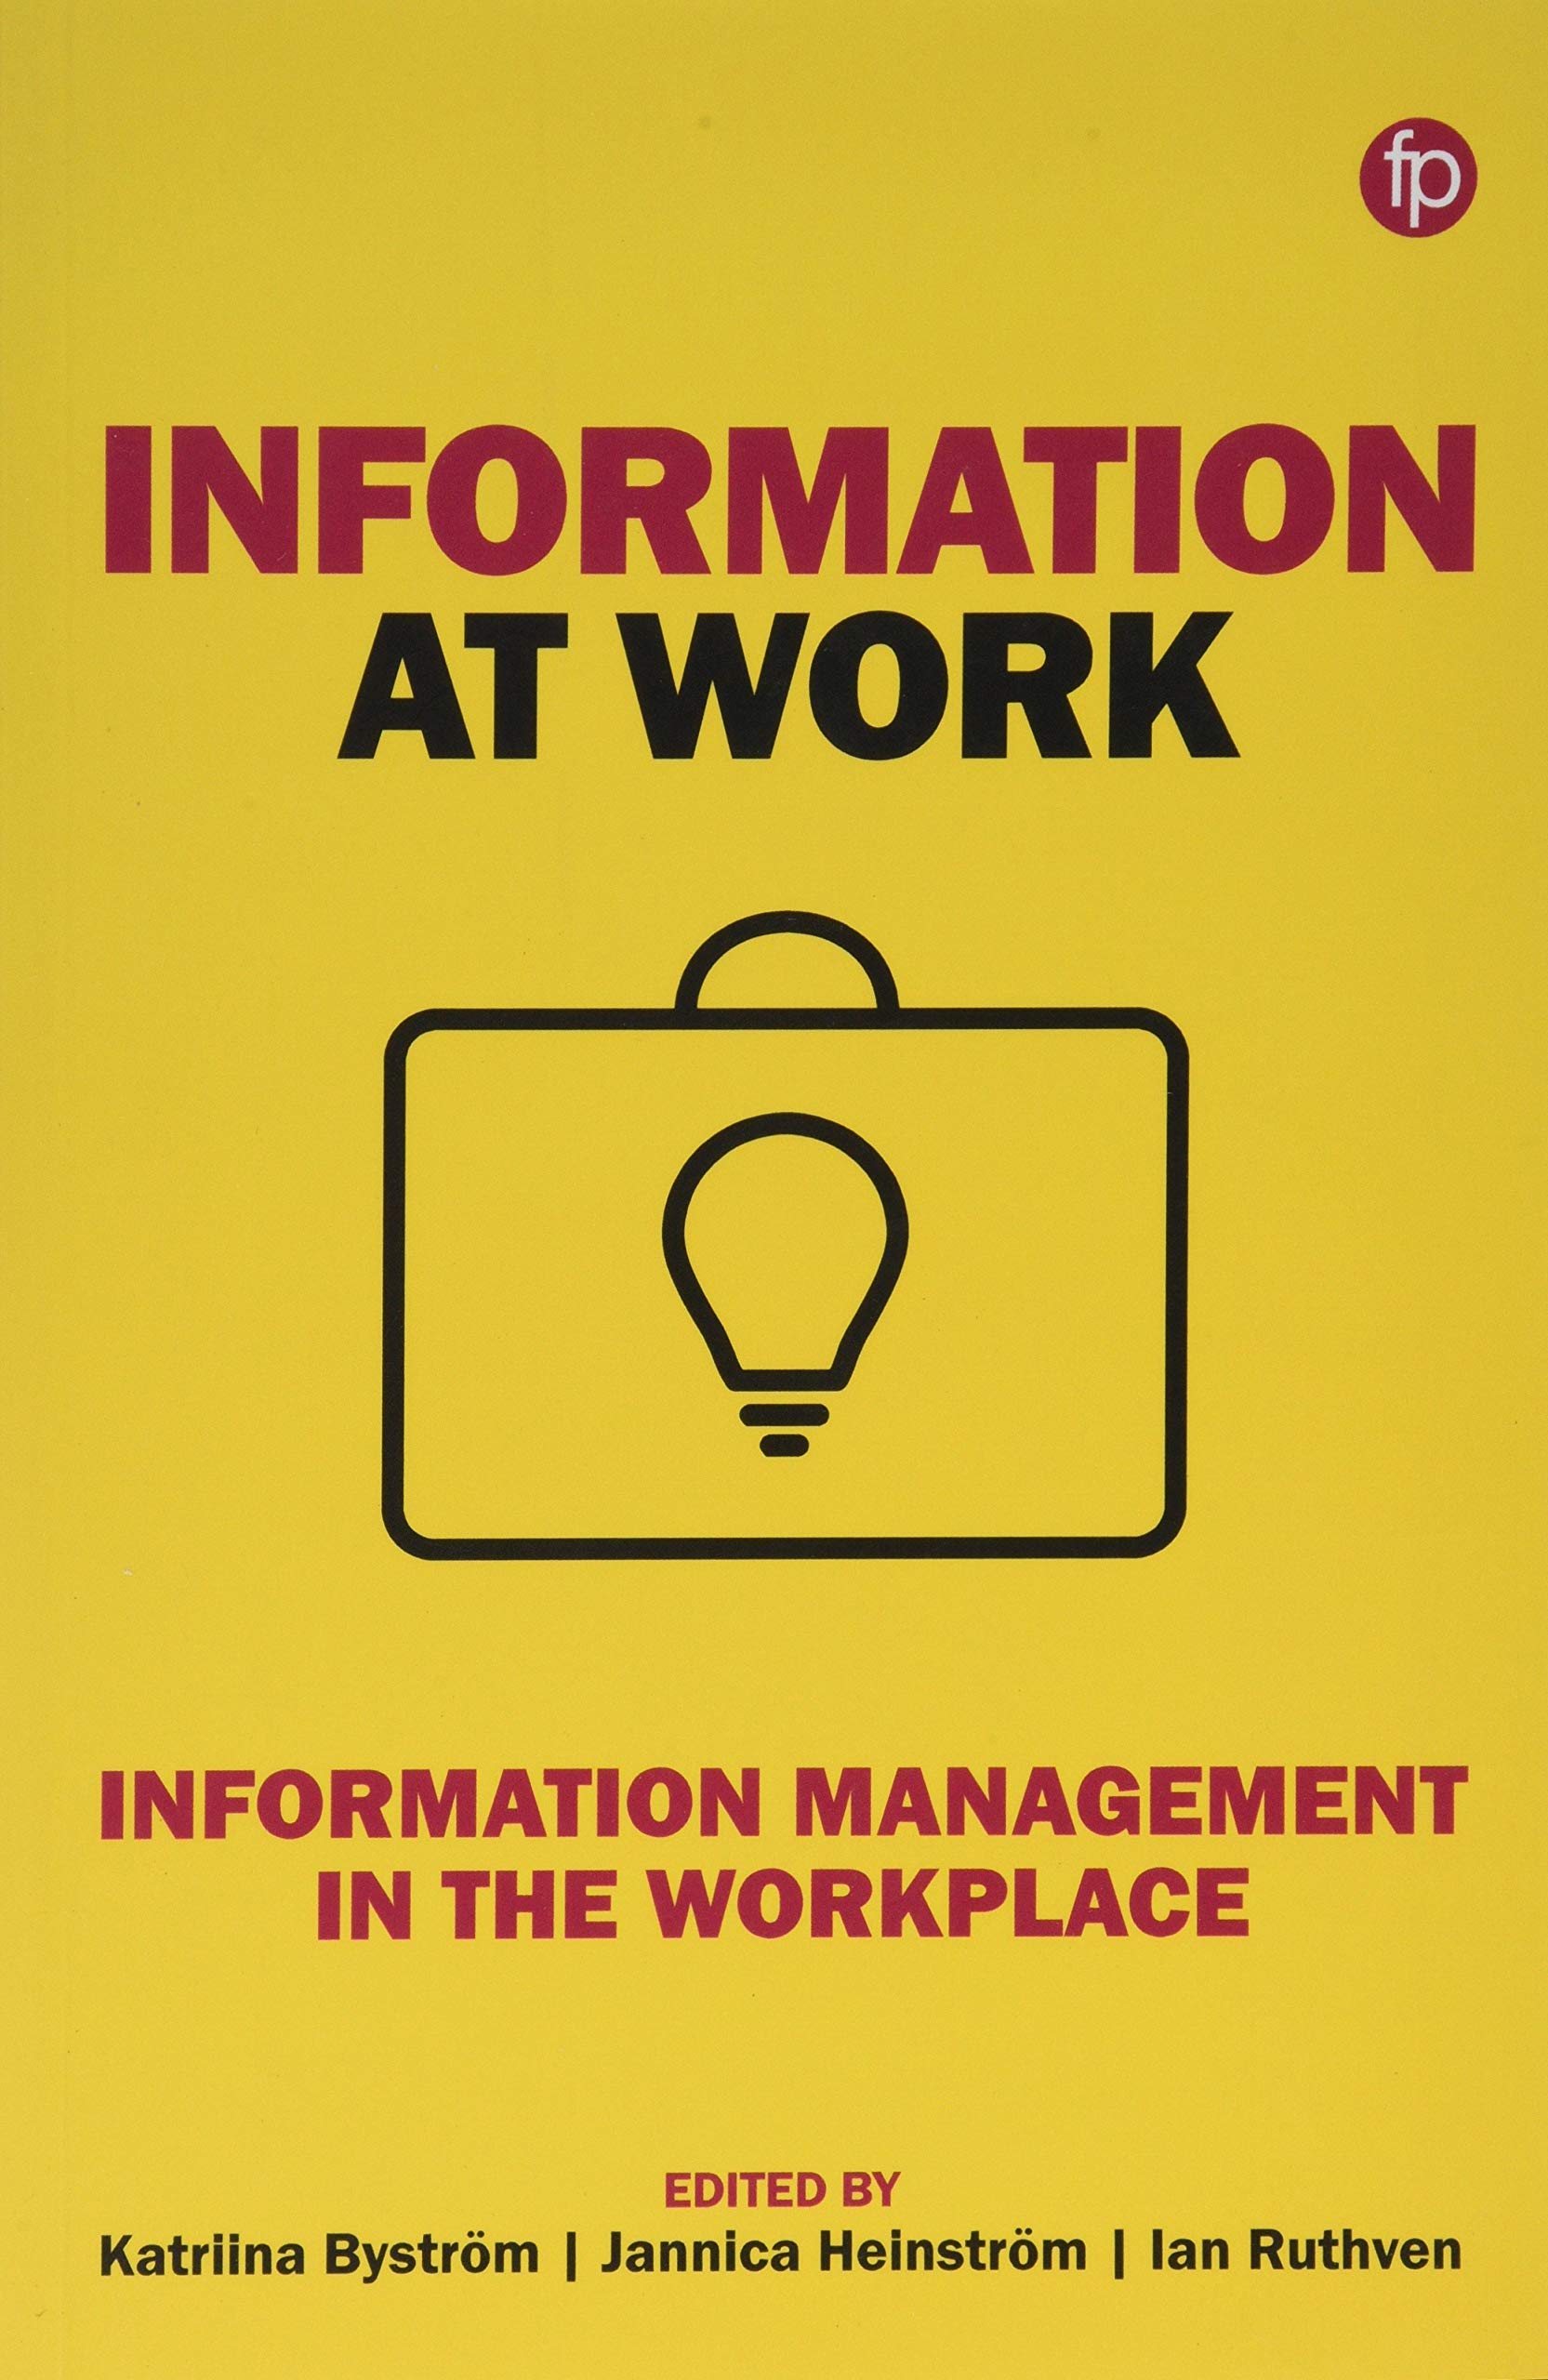 LIbri UK/US Bystroem, Katriina - Information At Work : Information Management In The Workplace NUOVO SIGILLATO, EDIZIONE DEL 26/01/2019 SUBITO DISPONIBILE